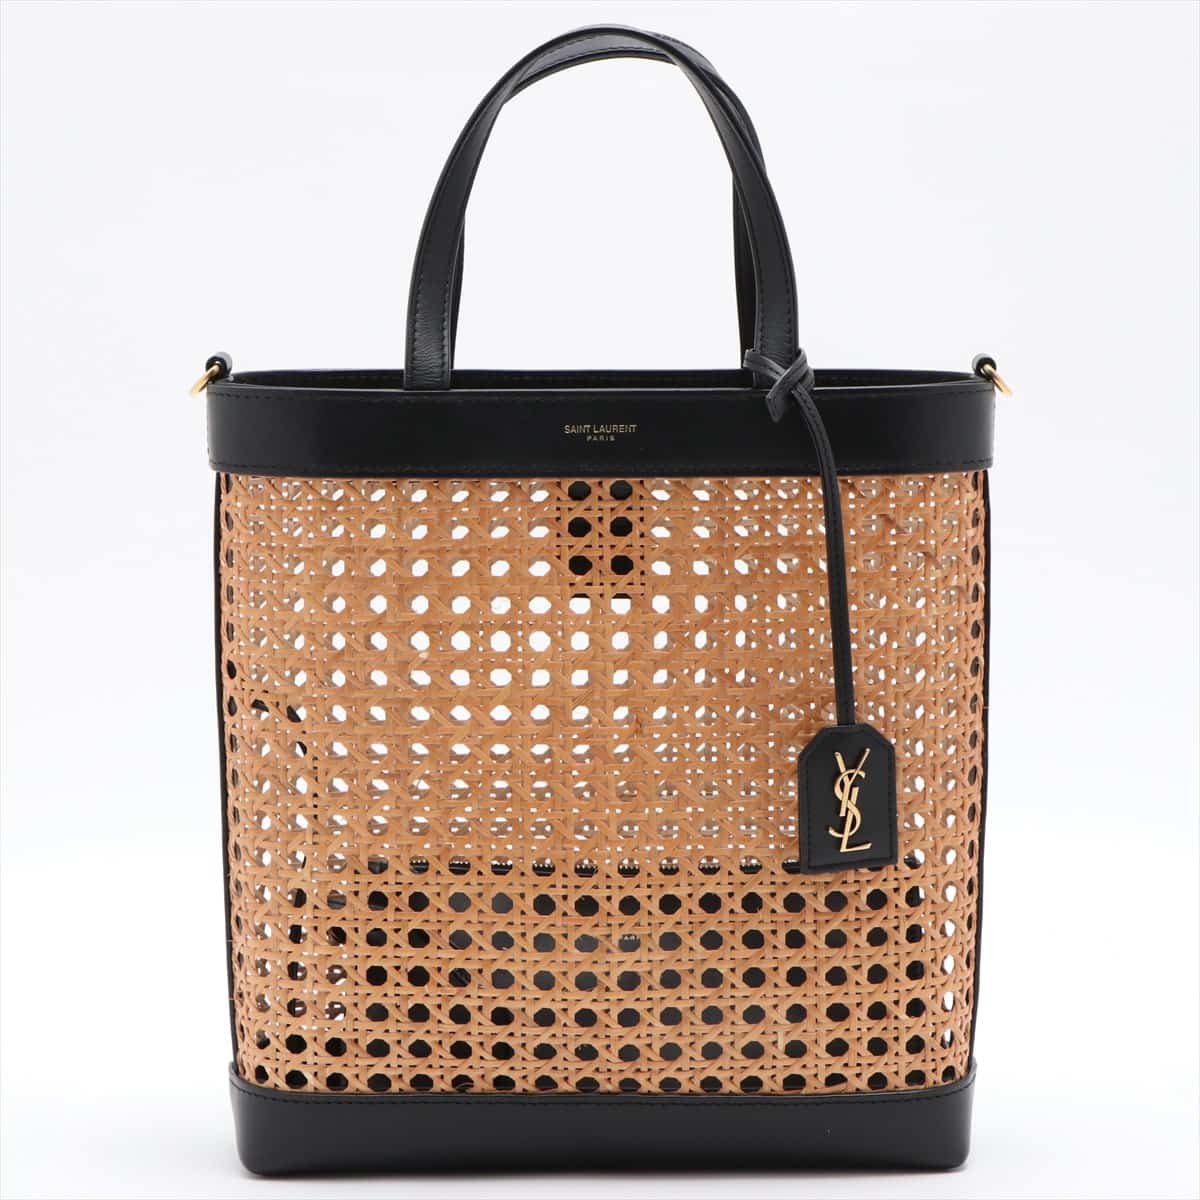 Saint Laurent Paris Straw & leather 2way handbag Black with pouch